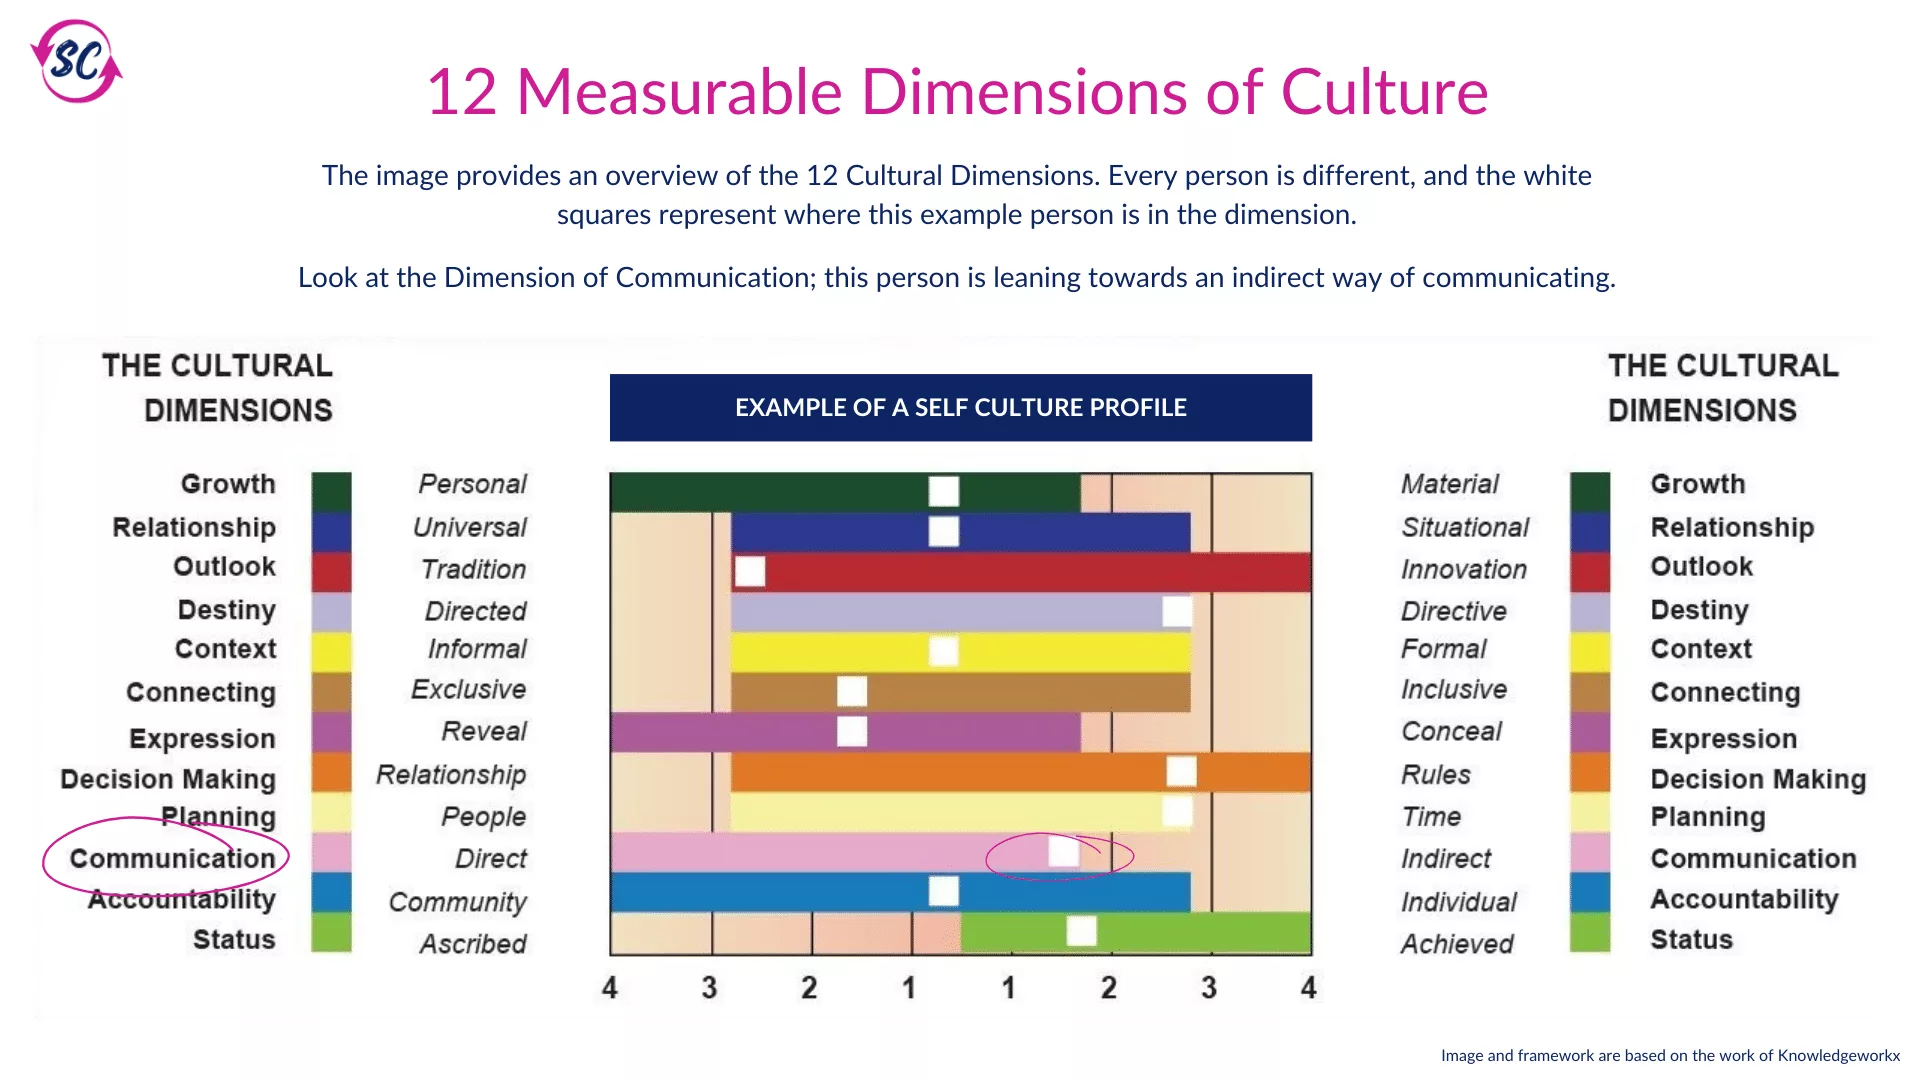 E060 - 12 Measurable Dimensions of Culture - Image